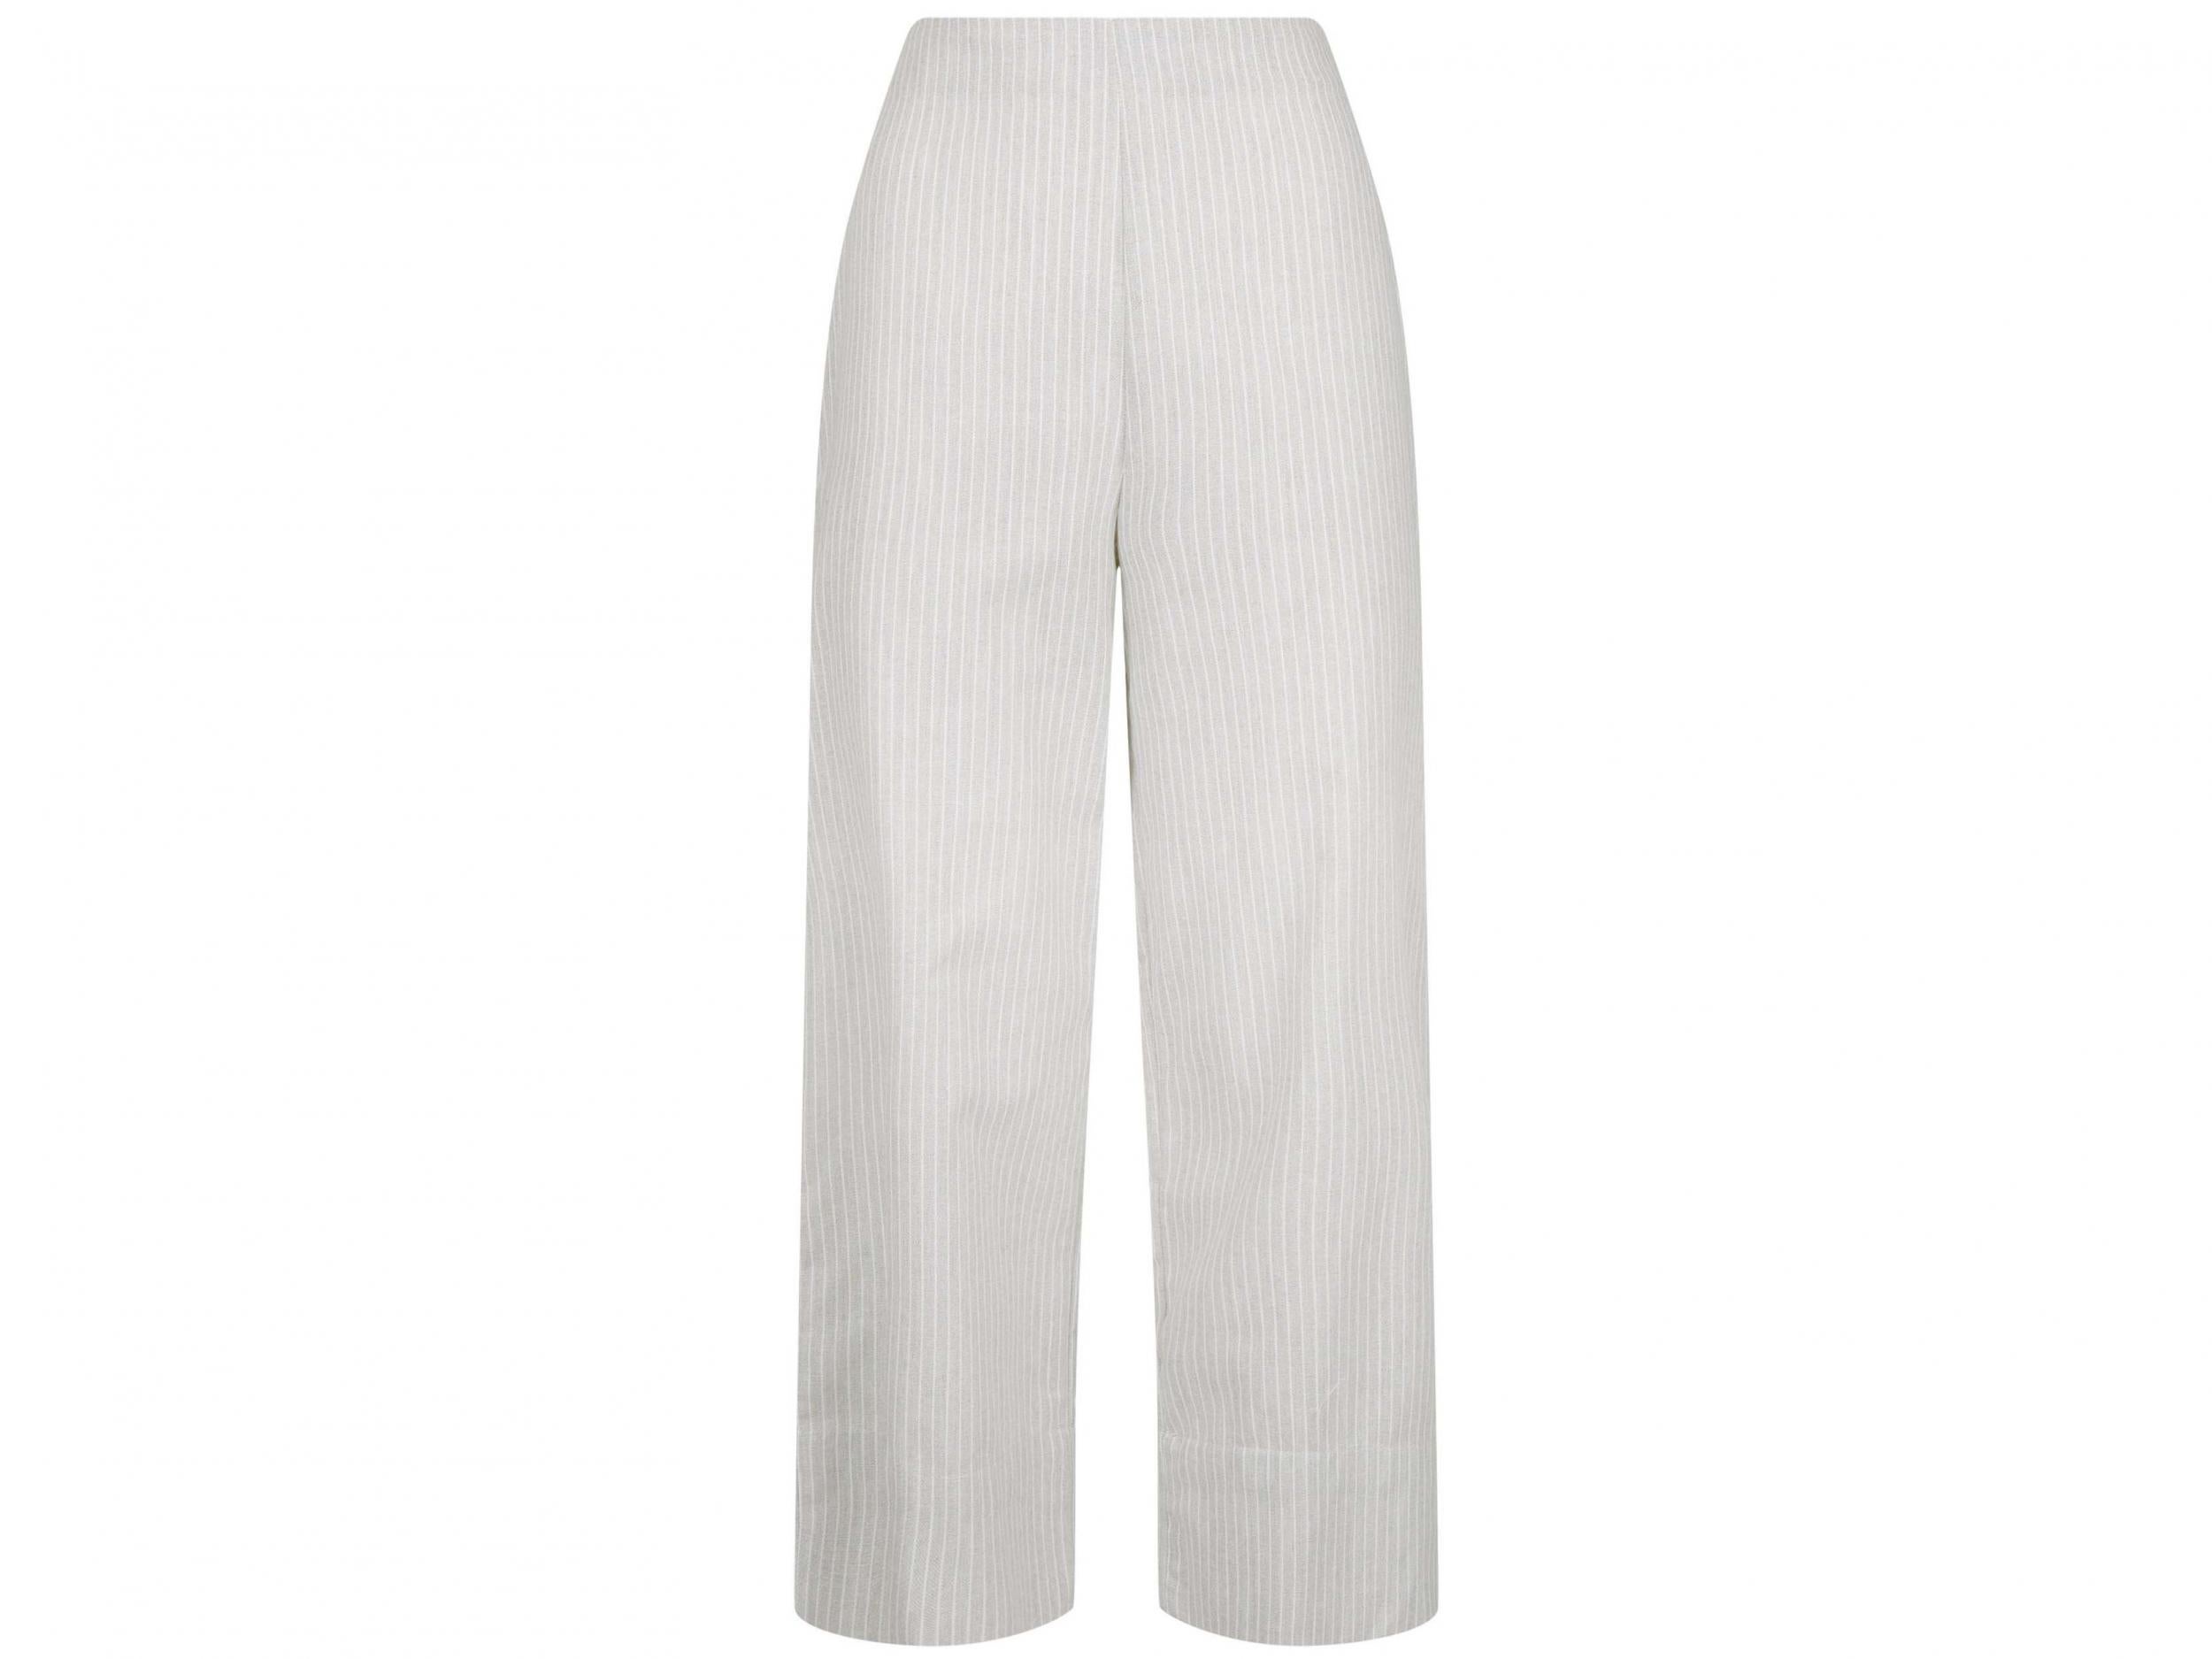 Pale Grey Stripe Linen-look Wide Leg Trousers, £22.99, New Look